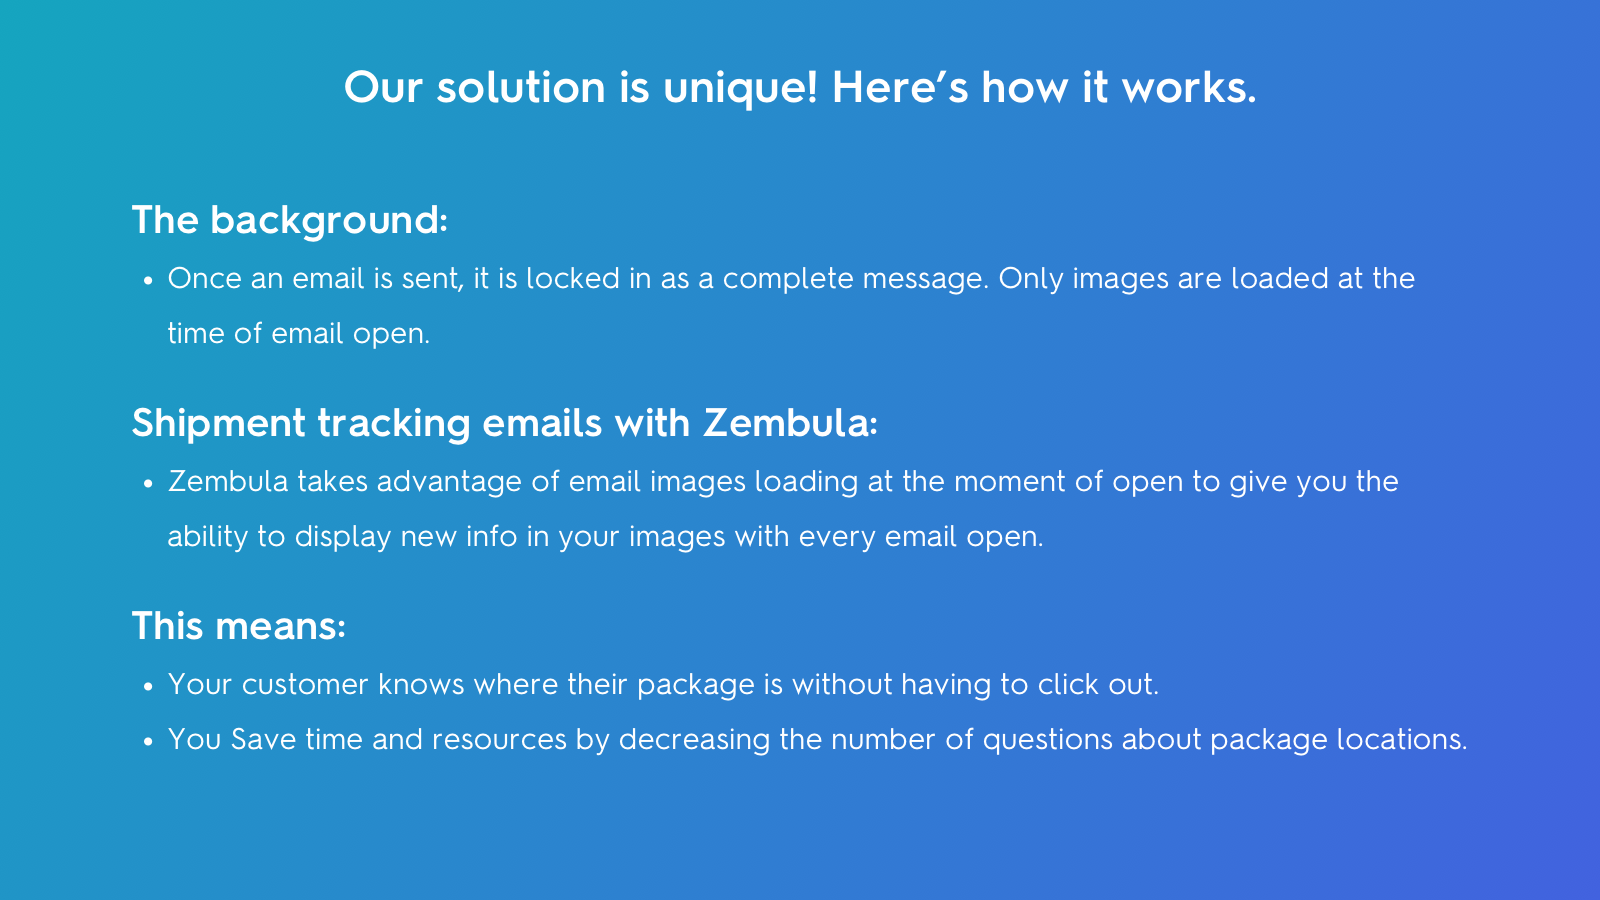 Hur Zembula fungerar: Bilder laddas vid varje öppning av e-post. 